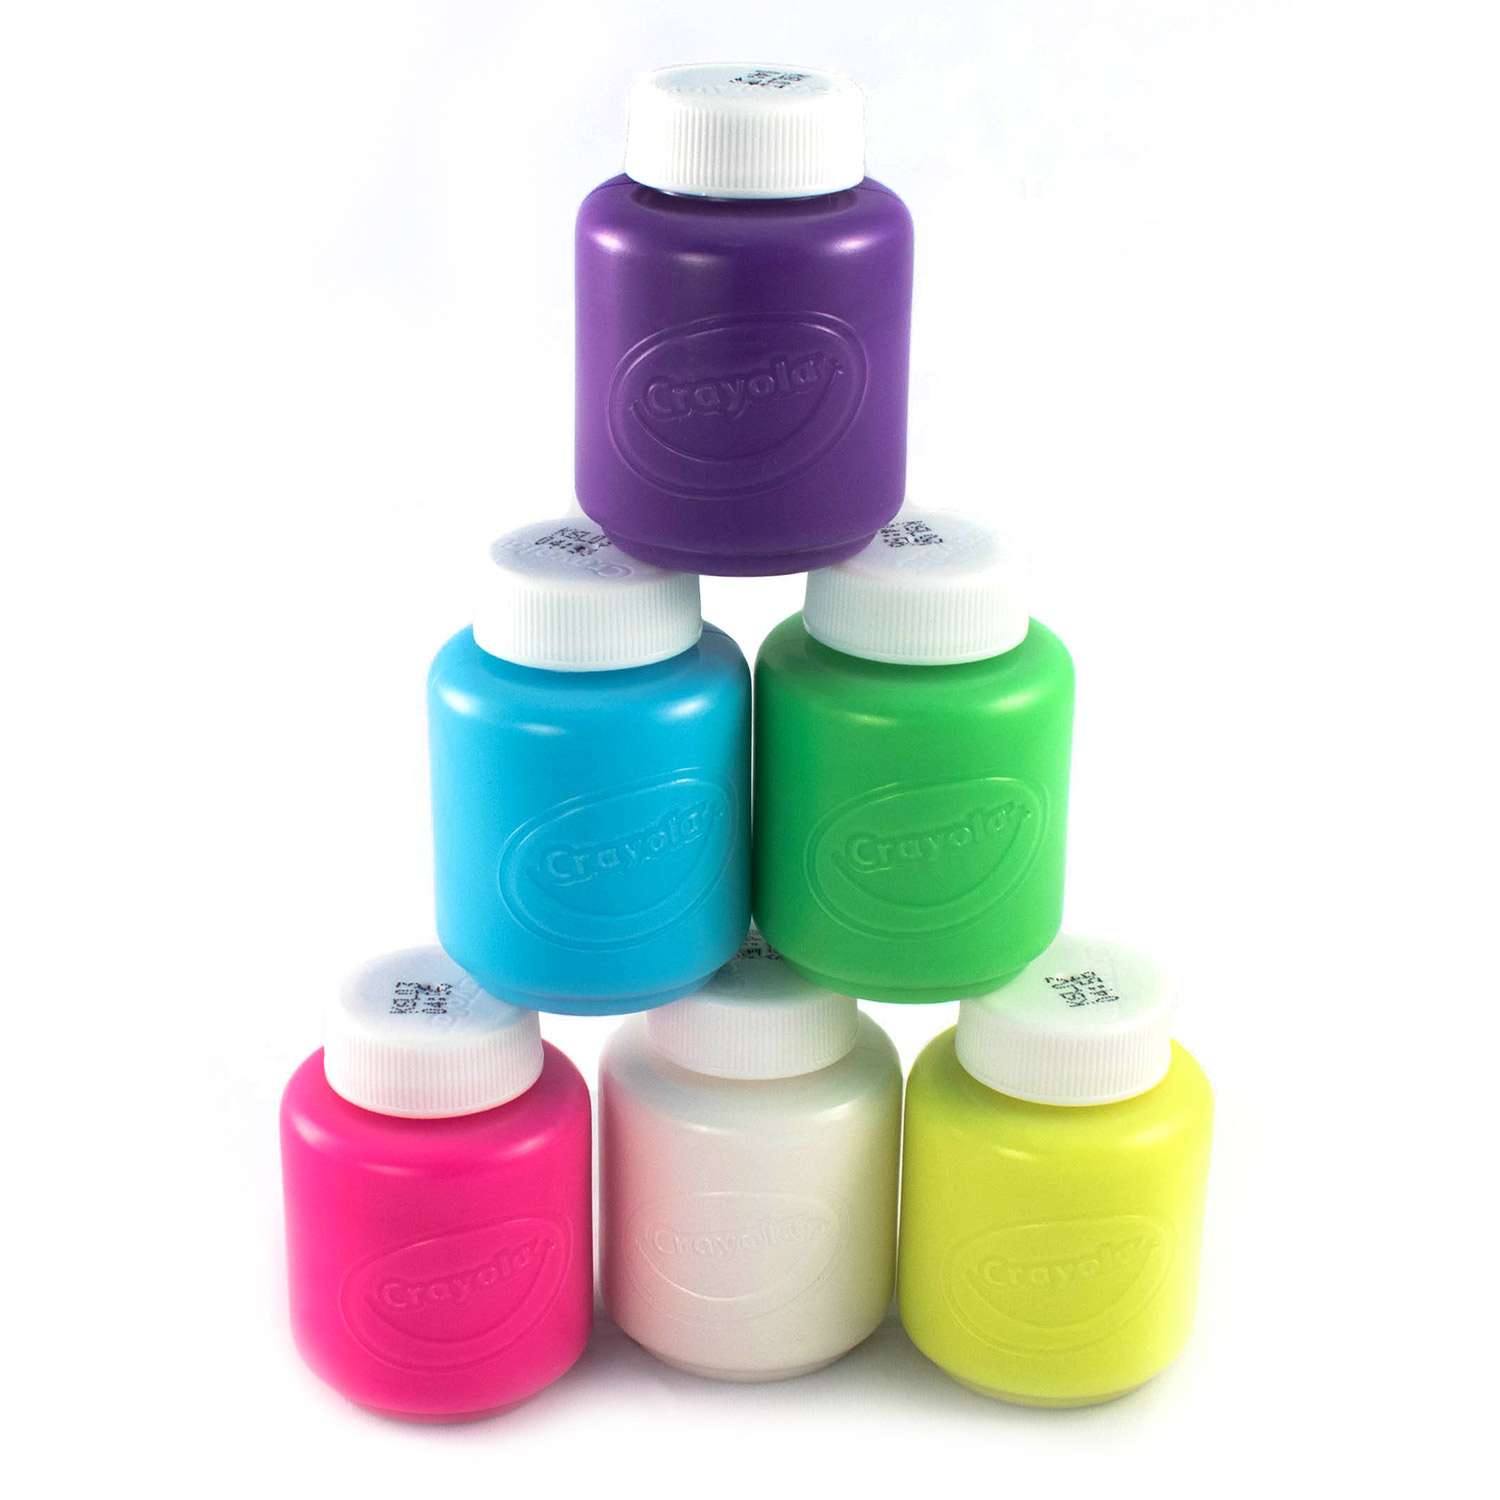 Краски Crayola неоновые 6 цветов 54-2391 - фото 5